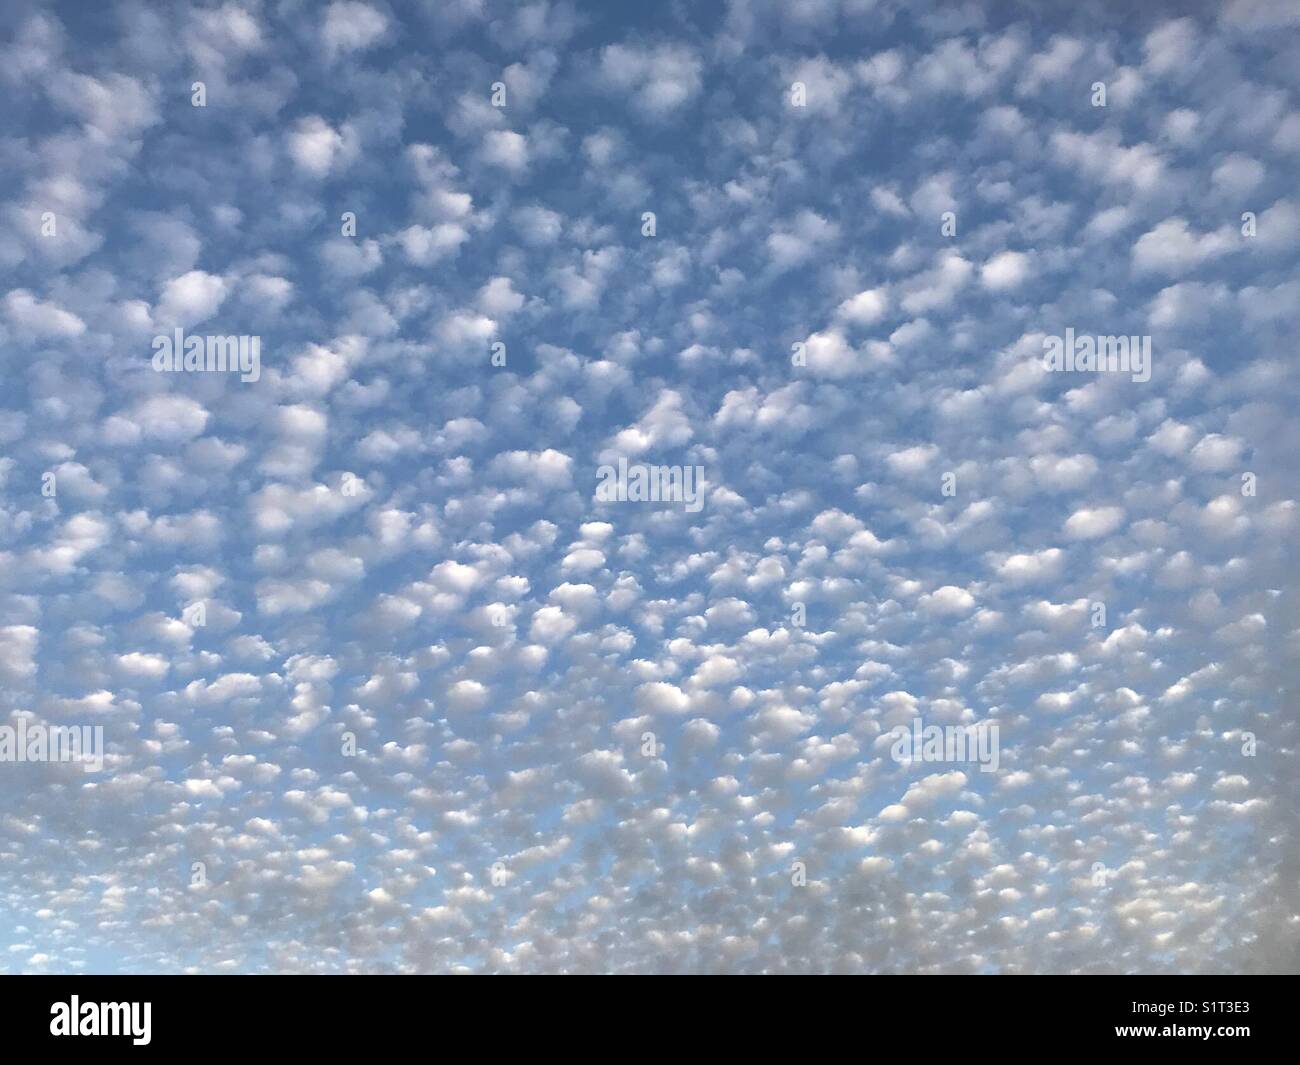 Sfondo o sfondo di cielo blu chiaro con un motivo di piccole nuvole bianche rotonde che riducono le dimensioni dal primo piano sullo sfondo Foto Stock